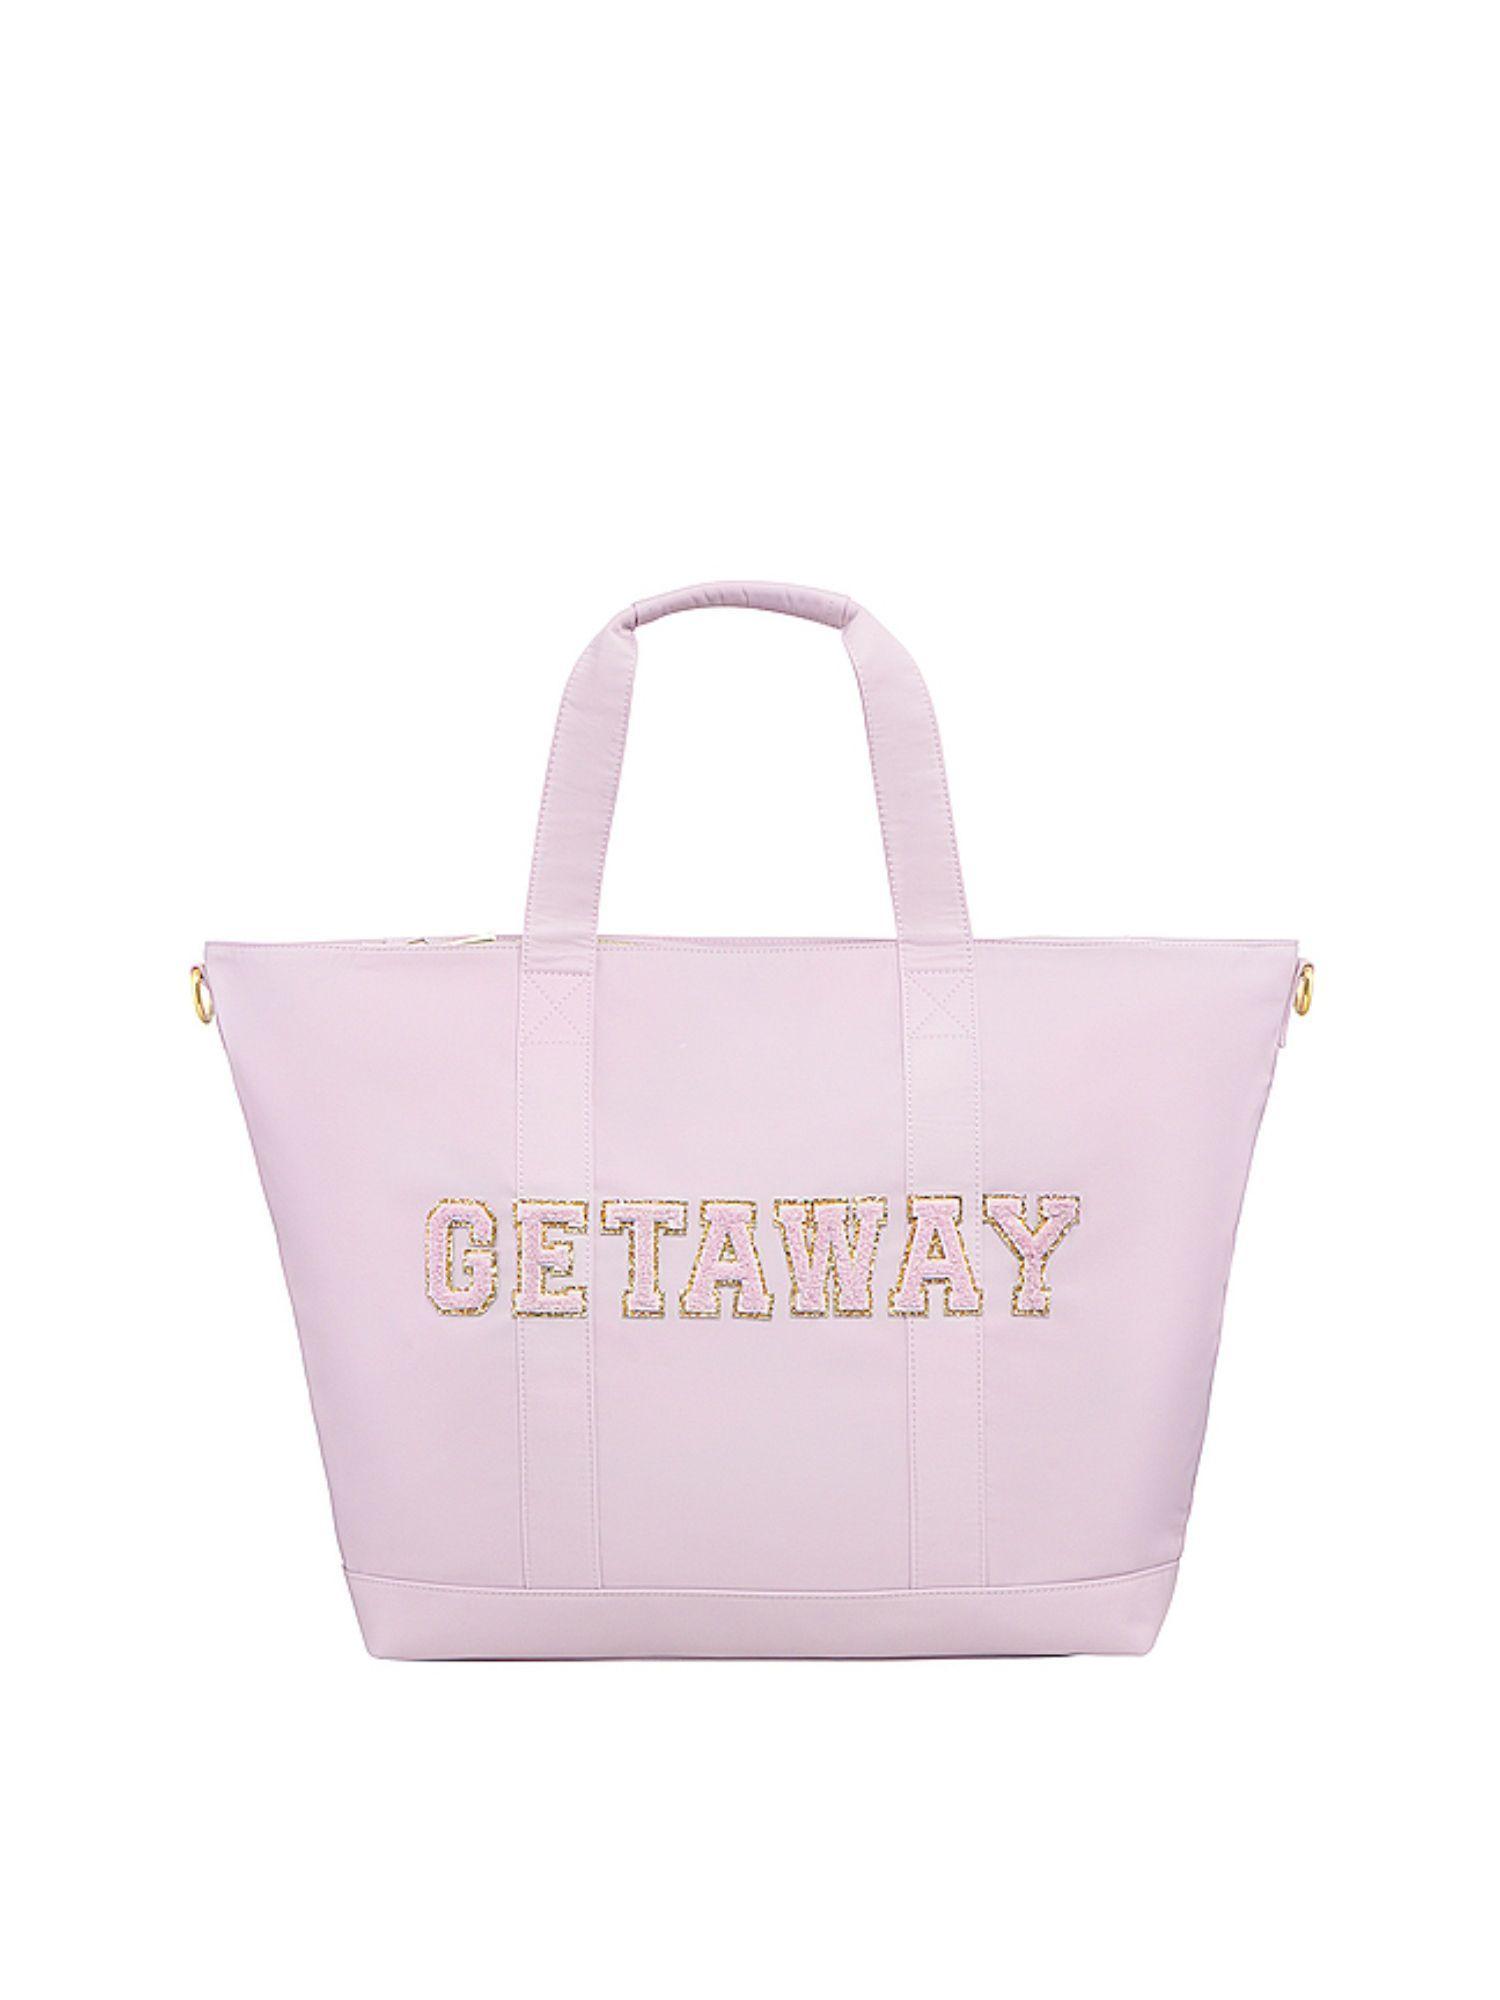 getaway tote bag